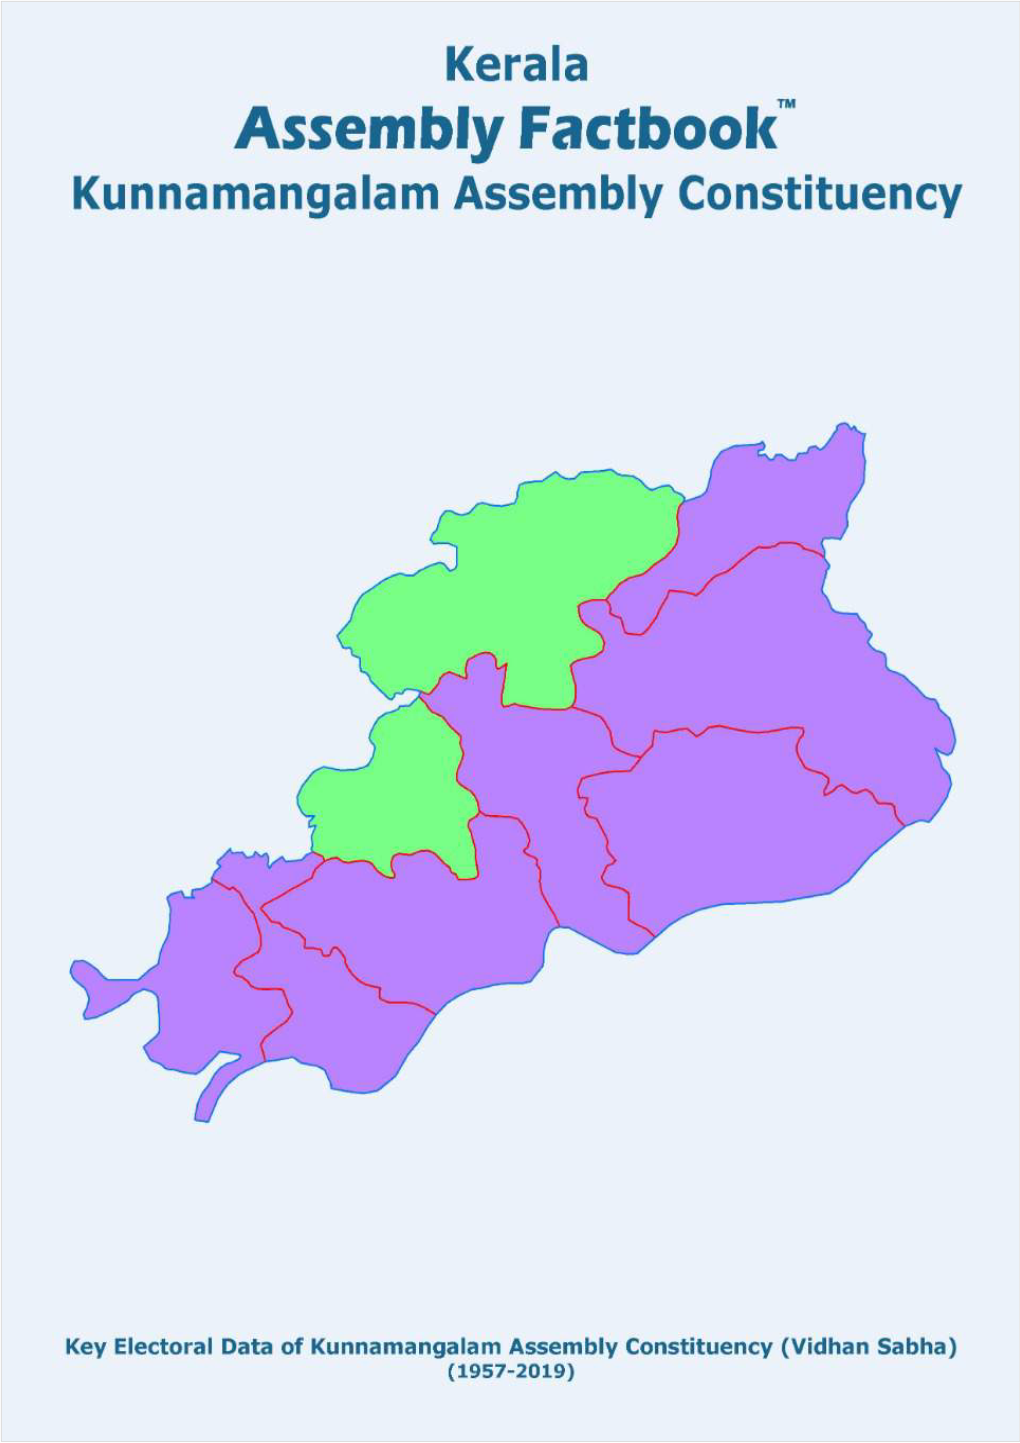 Kunnamangalam Assembly Kerala Factbook